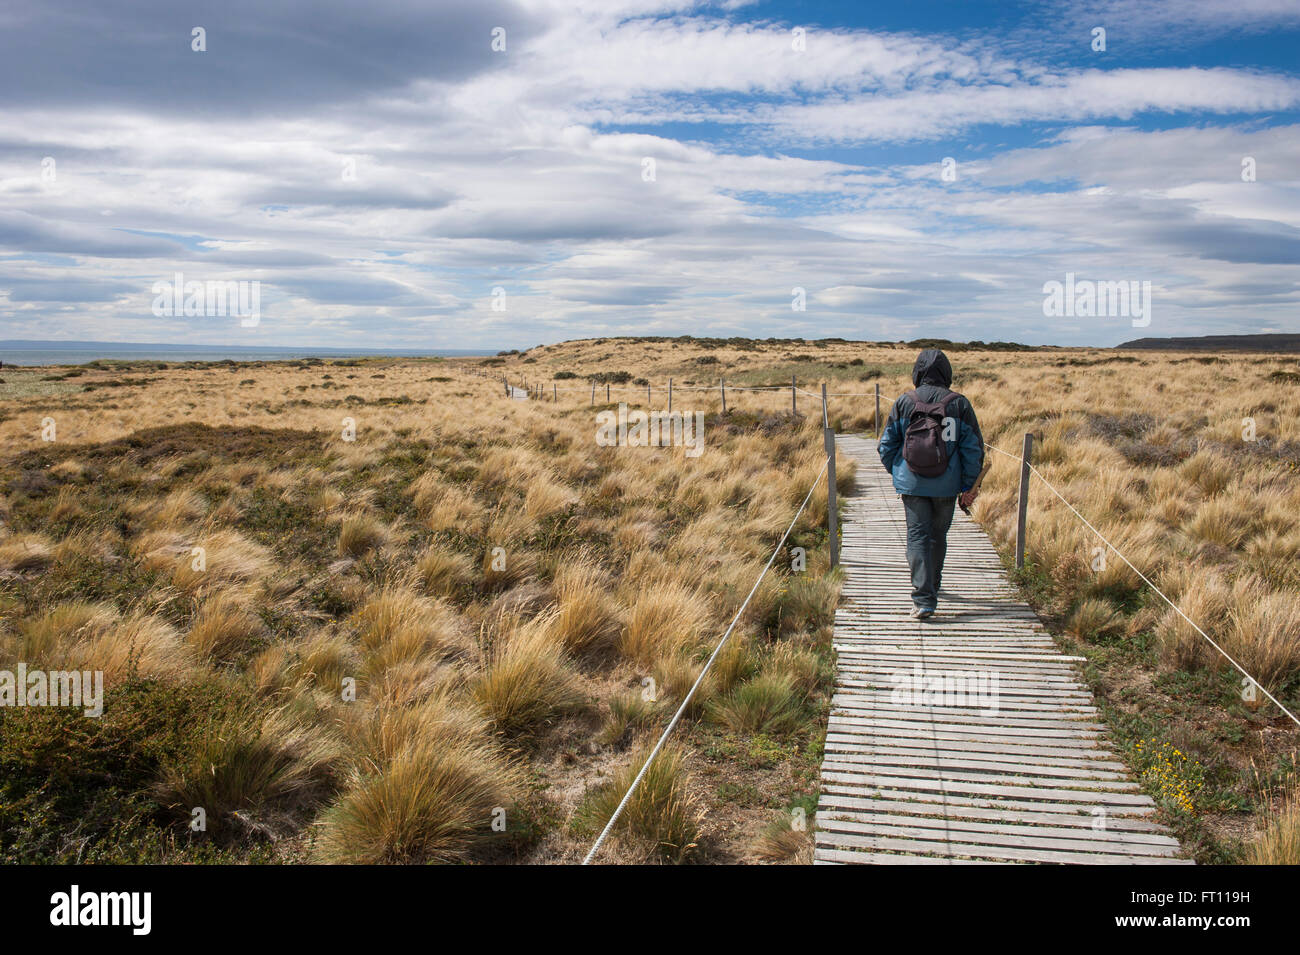 Hiker following a boardwalk, Seno Otway, Punta Arenas, Magallanes y de la Antartica Chilena, Patagonia, Chile Stock Photo